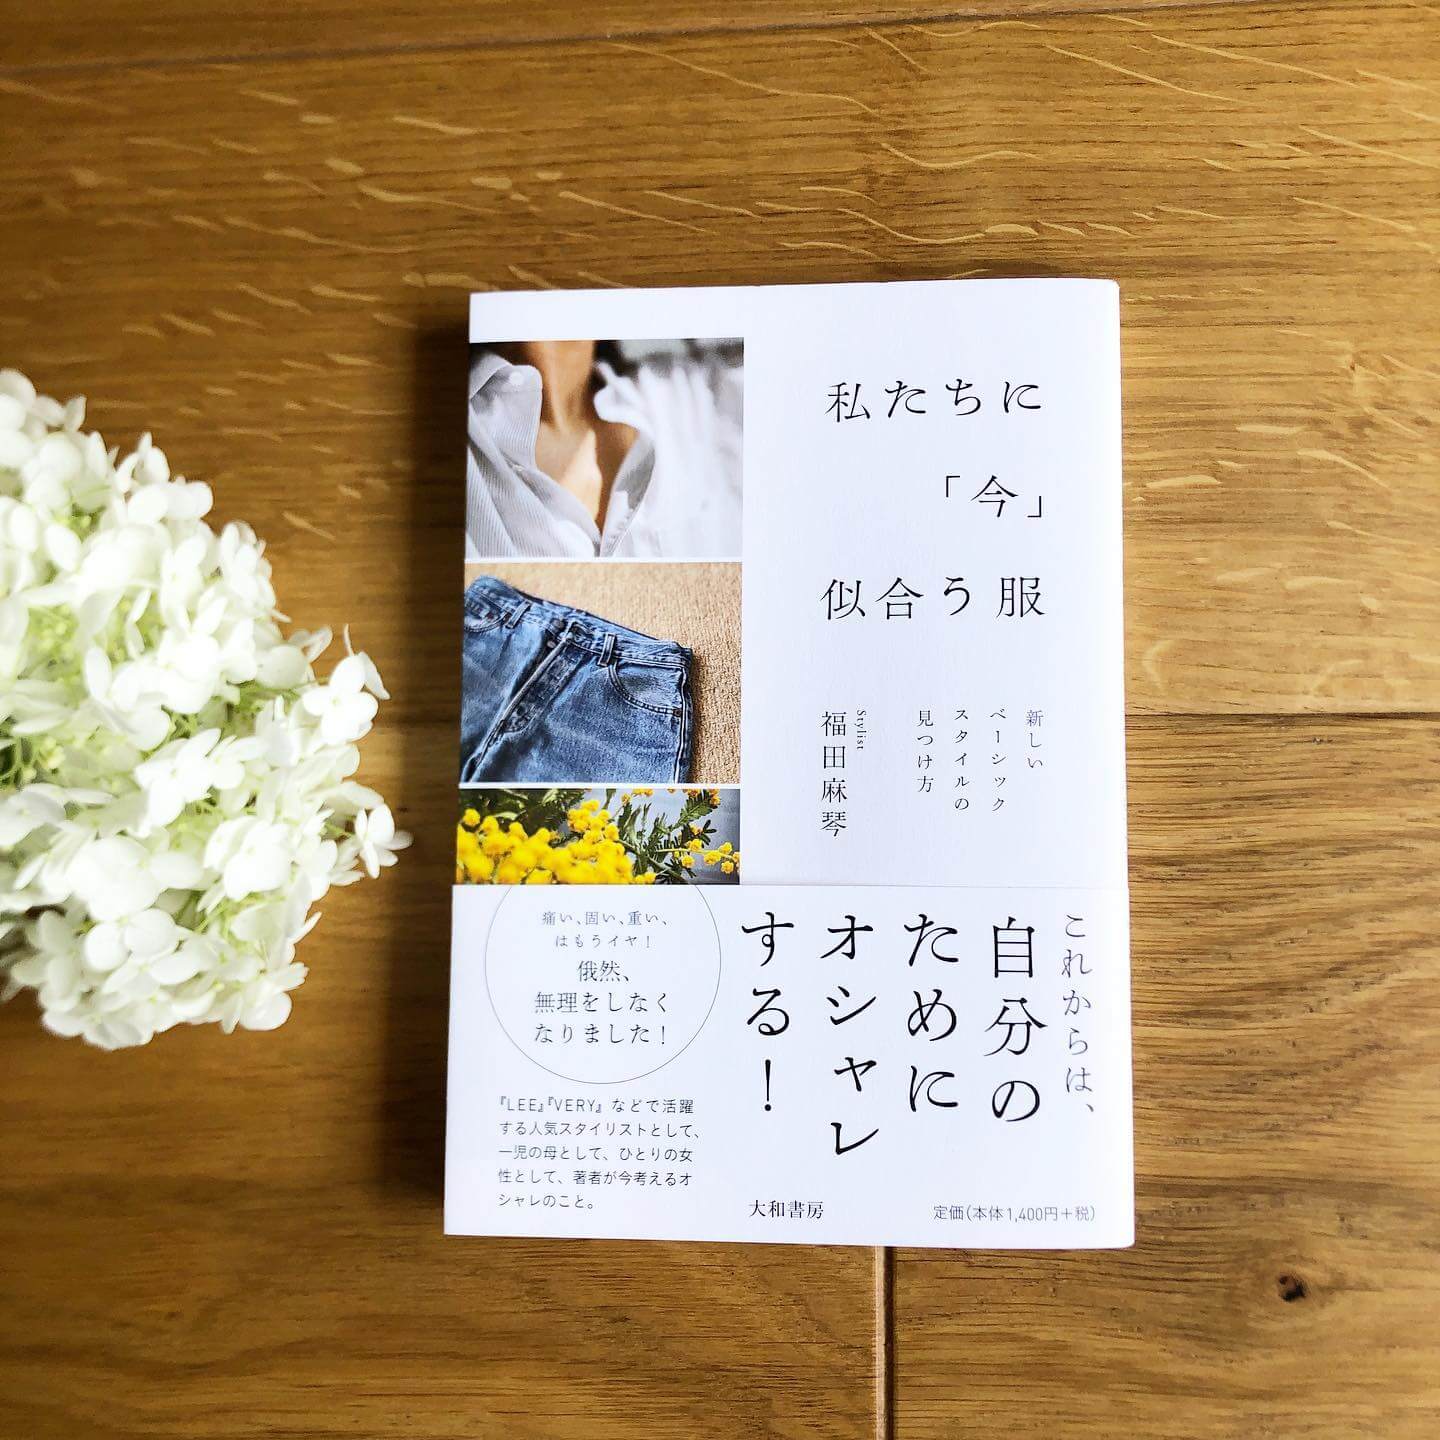 スタイリスト福田麻琴さんのエッセイ本「私たちに『今』似合う服」が先日、発売されました🎉